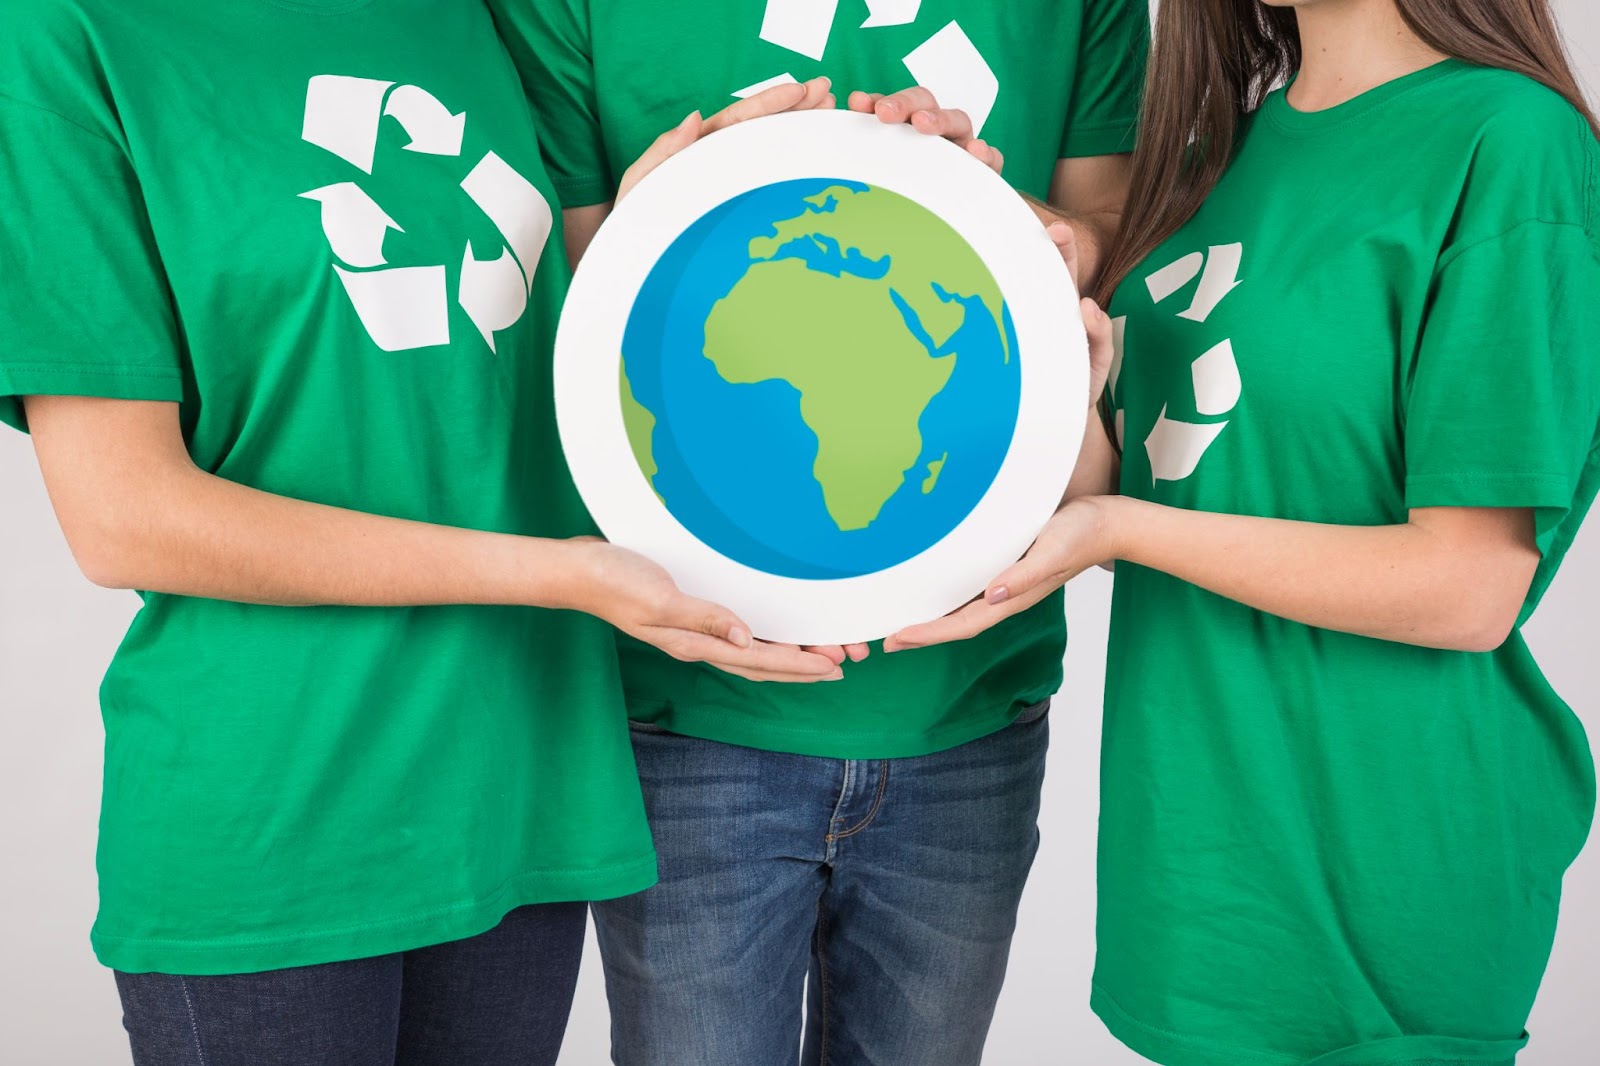 Um grupo de três pessoas está vestindo camisetas verdes, cada uma delas exibindo o símbolo da reciclagem, enquanto seguram uma imagem ilustrada do planeta Terra.